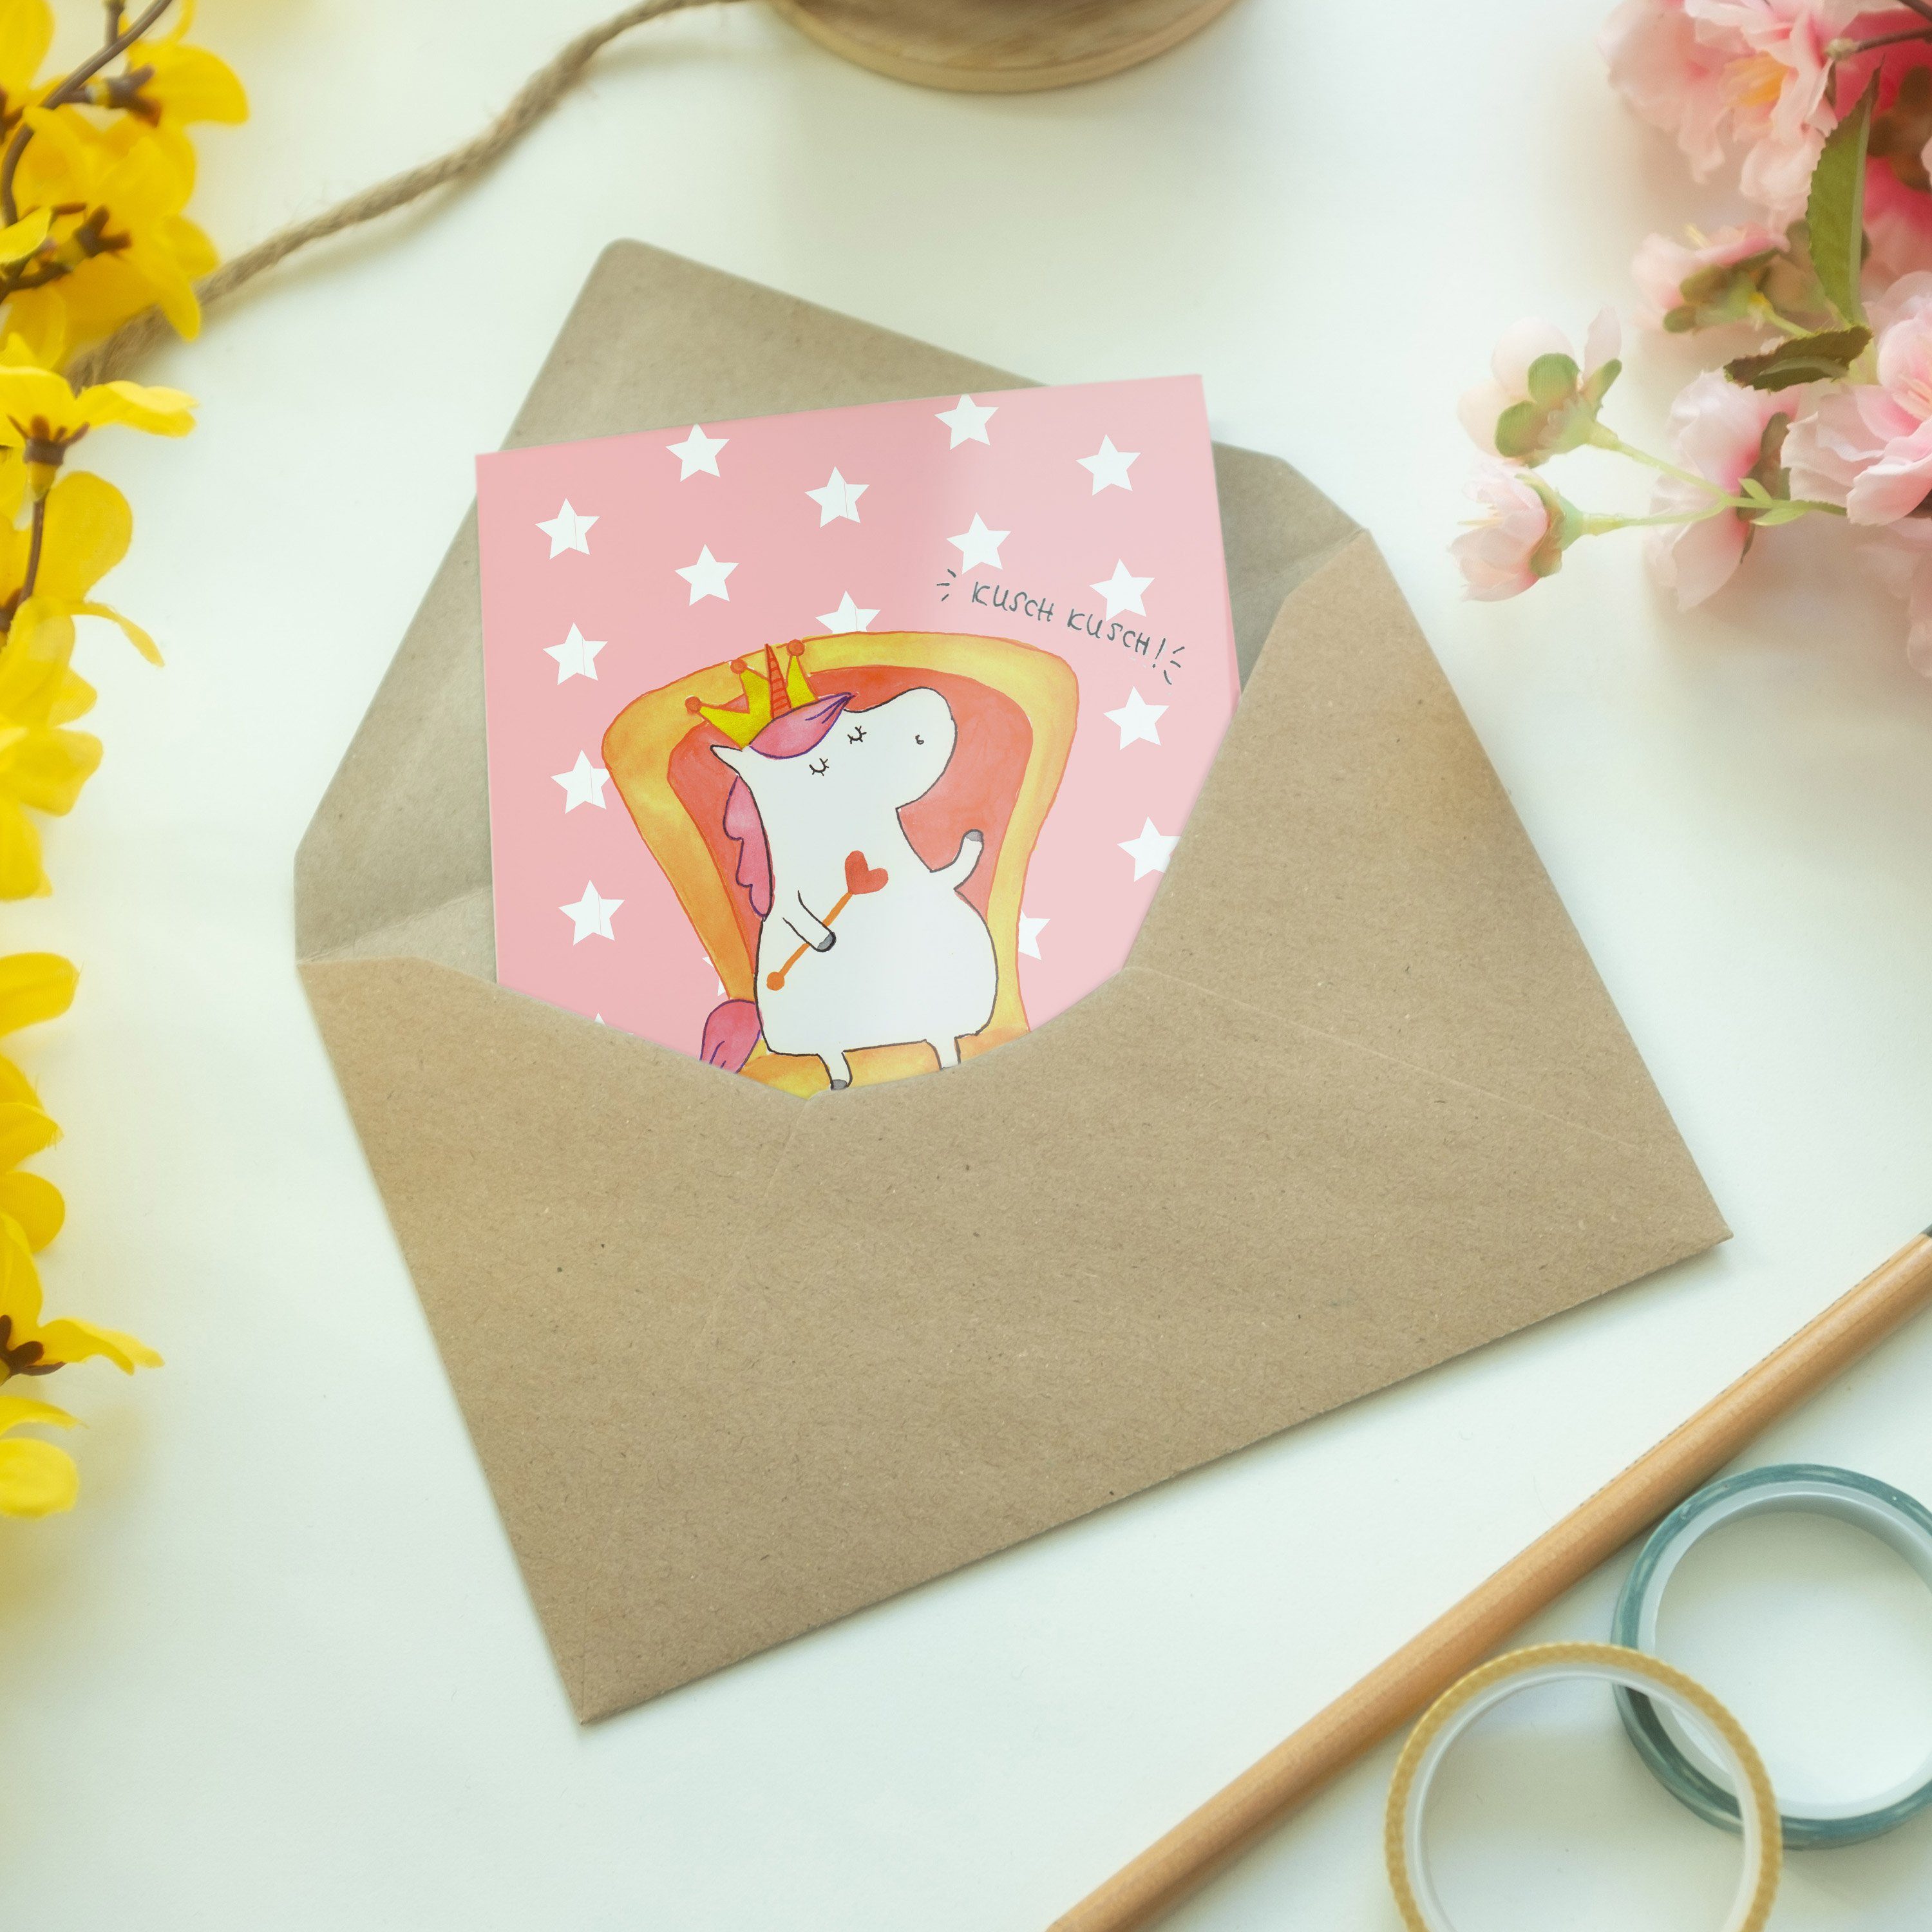 Mr. & Mrs. - Prinzessin Unicorn, Grußkarte Klappkarte, Pastell - Rot Hoc Einhorn Geschenk, Panda